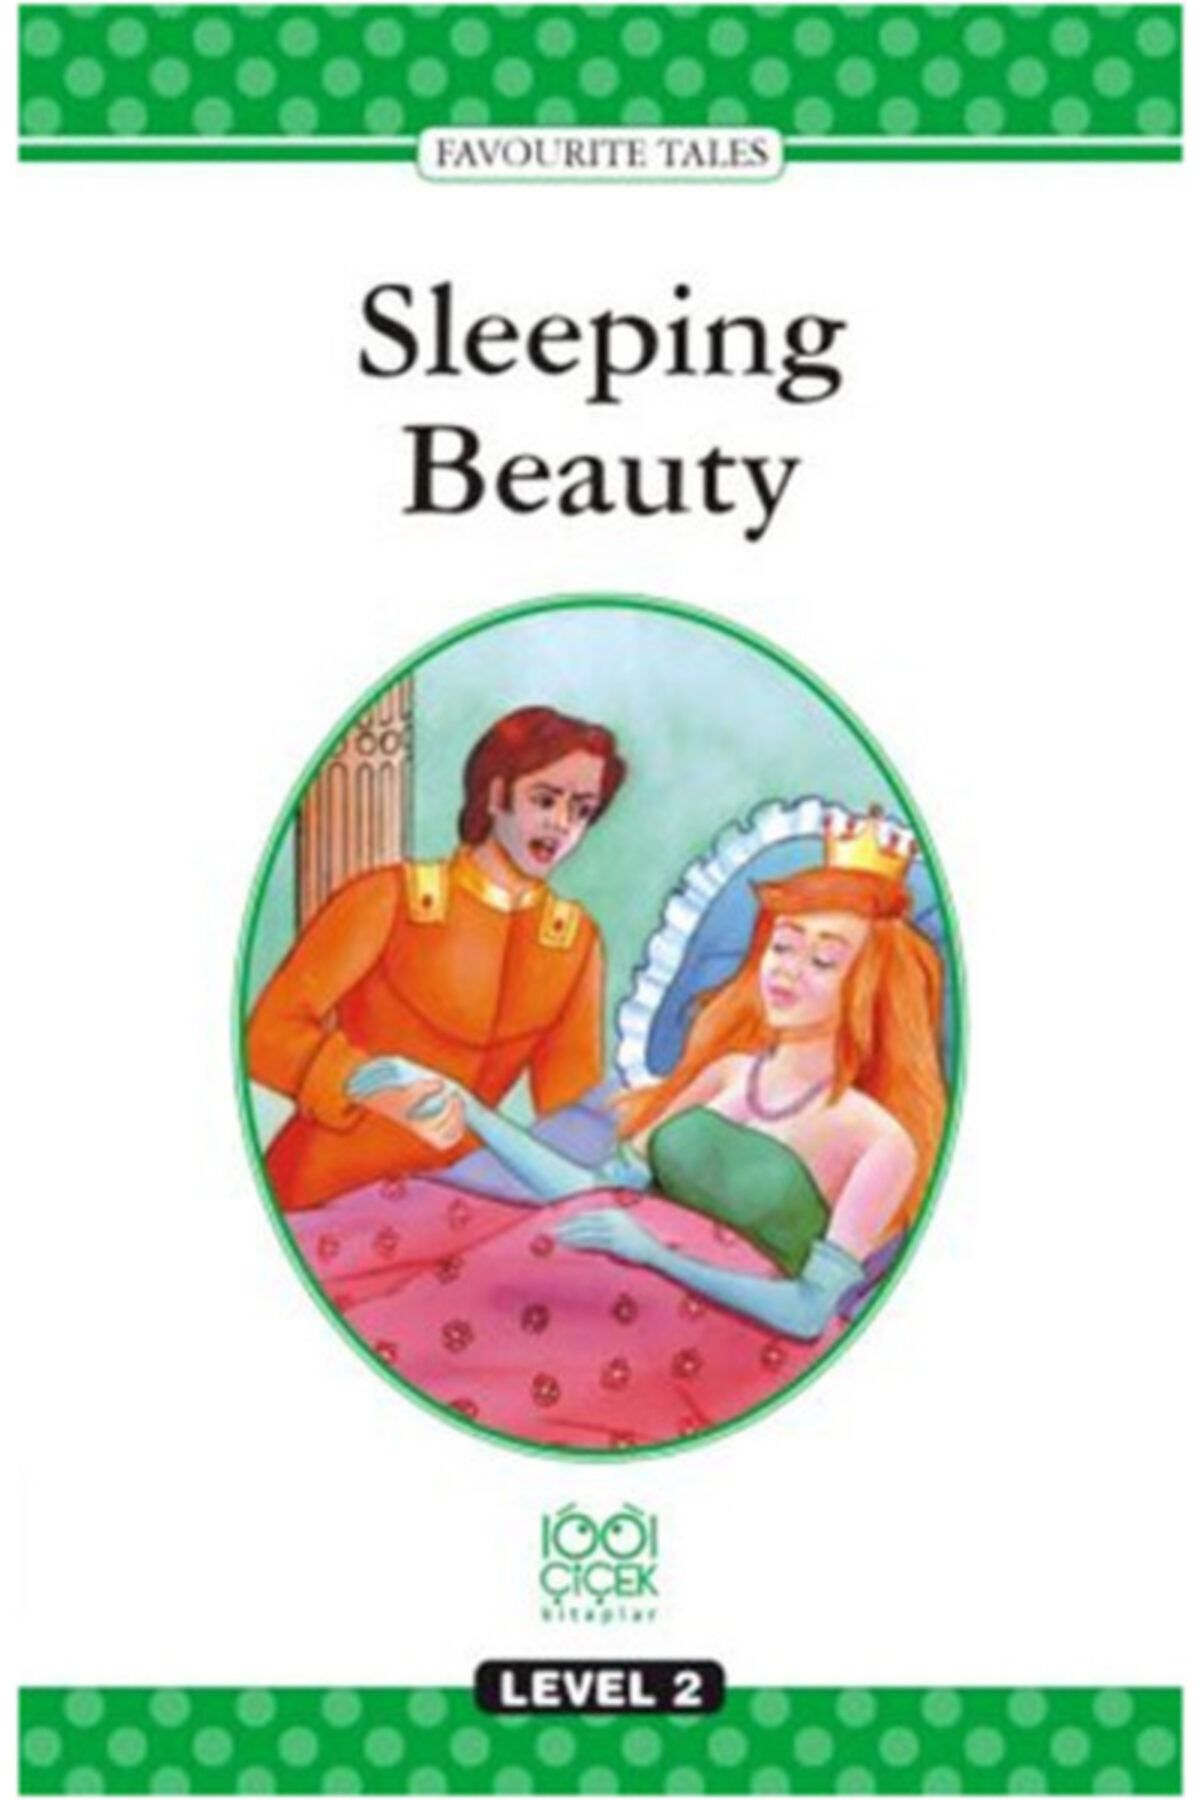 1001 Çiçek Kitaplar Sleeping Beauty Level 2 Books Kolektif - Kolektif